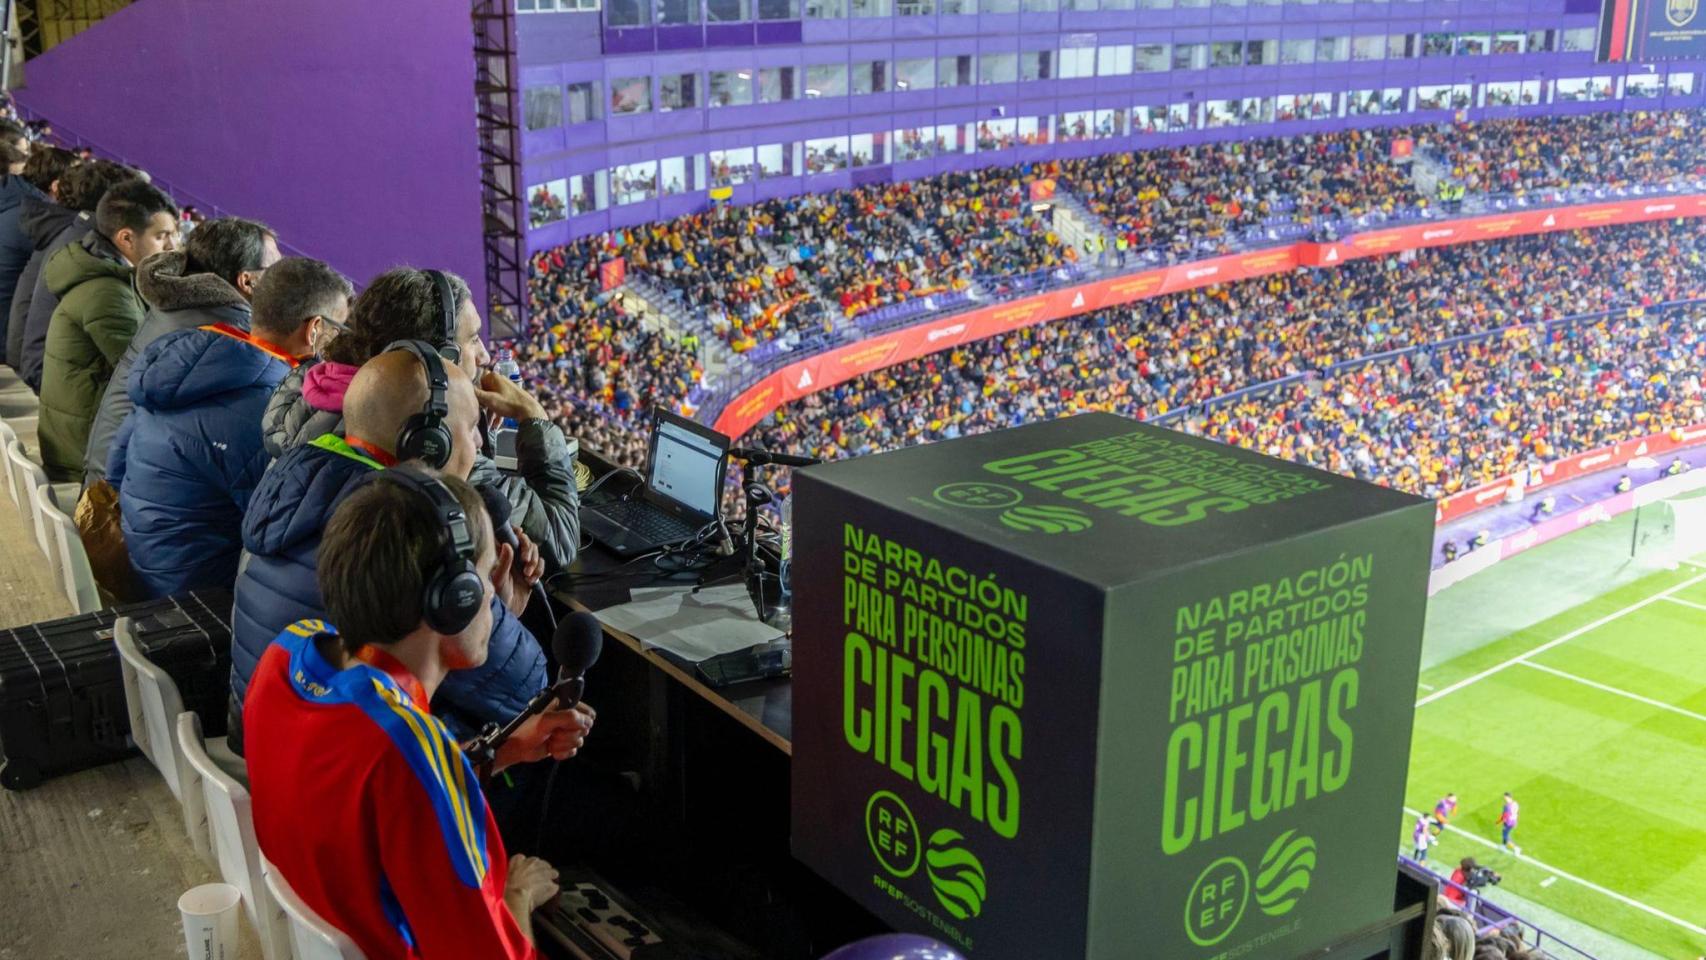 Sistema de narración para personas invidentes en un partido de la selección española de fútbol.